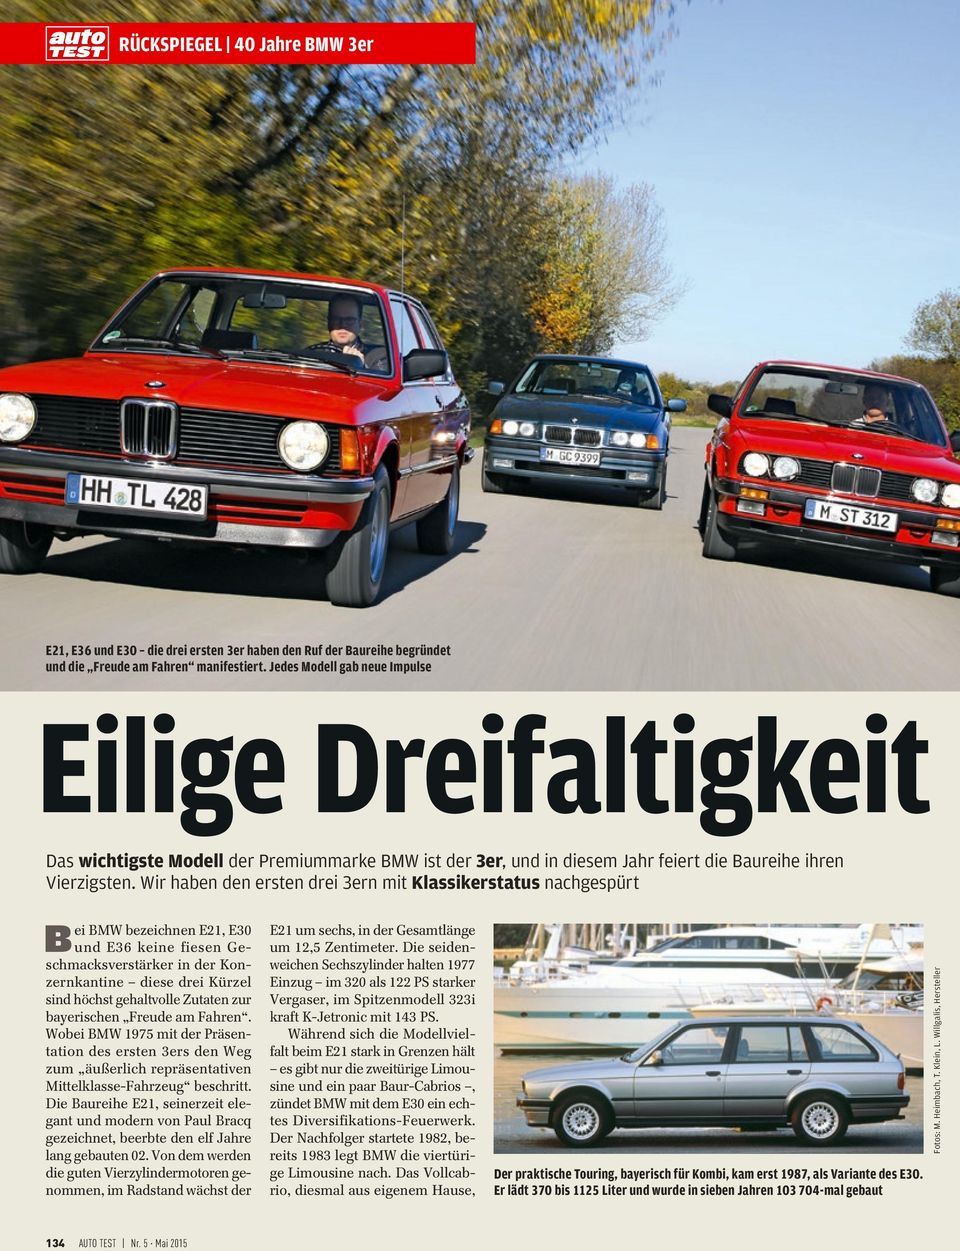 bayerischen Freude am Fahren. Wobei BMW 1975 mit der Präsentation des ersten 3ers den Weg zum äußerlich repräsentativen Mittelklasse-Fahrzeug beschritt.